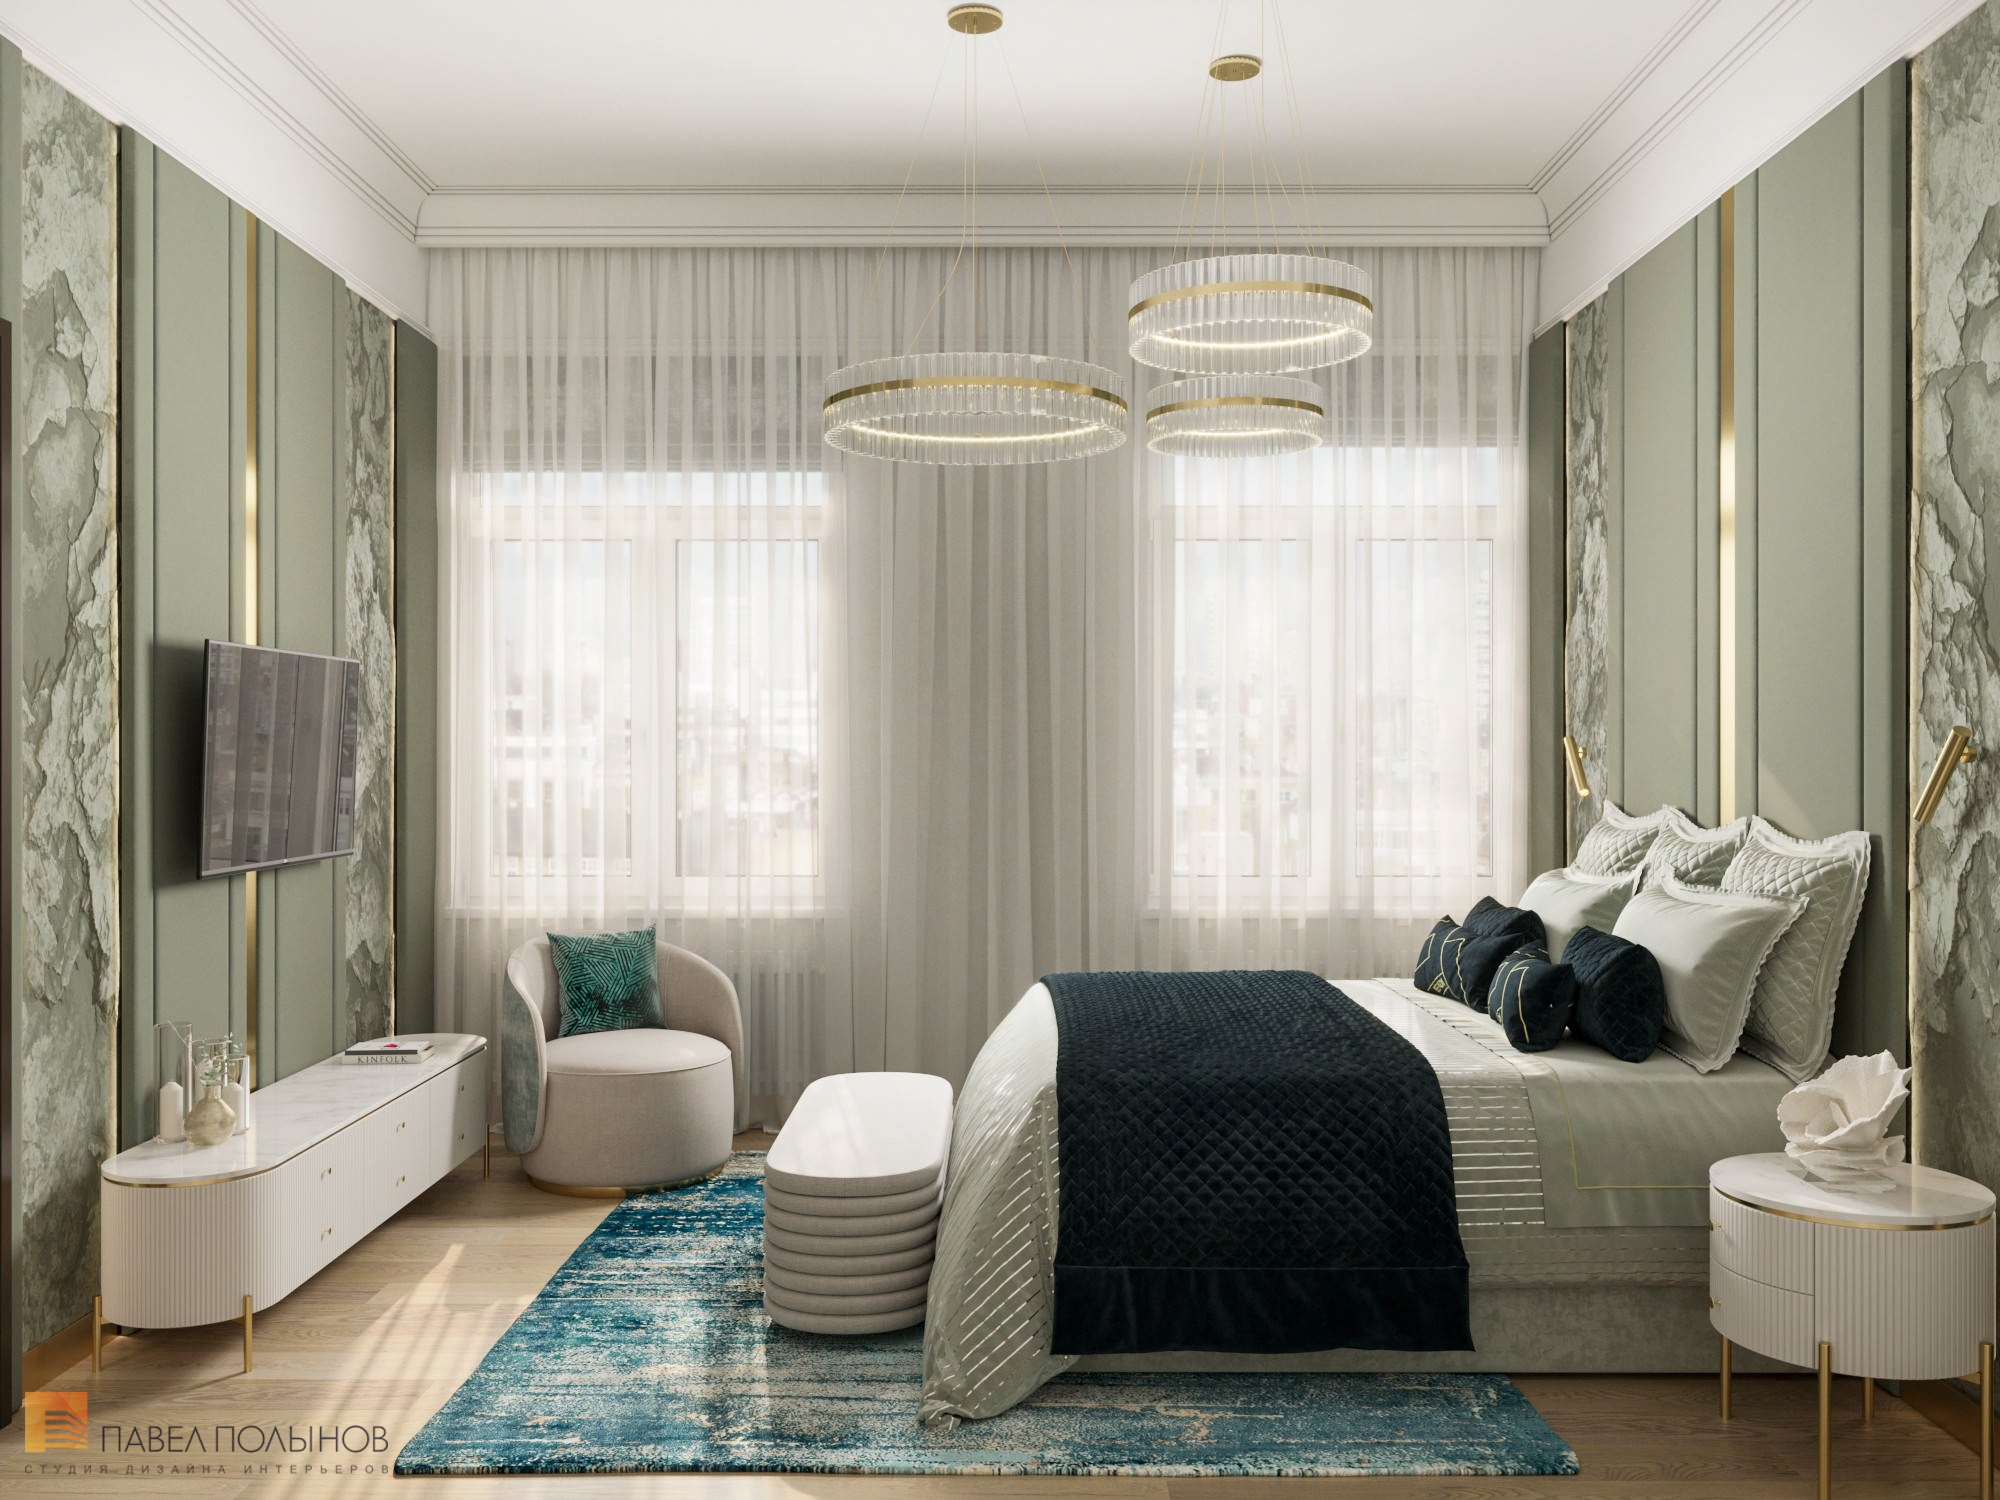 Фото интерьер спальни из проекта «Дизайн интерьера квартиры в стиле Ар-деко, 100 кв.м.»